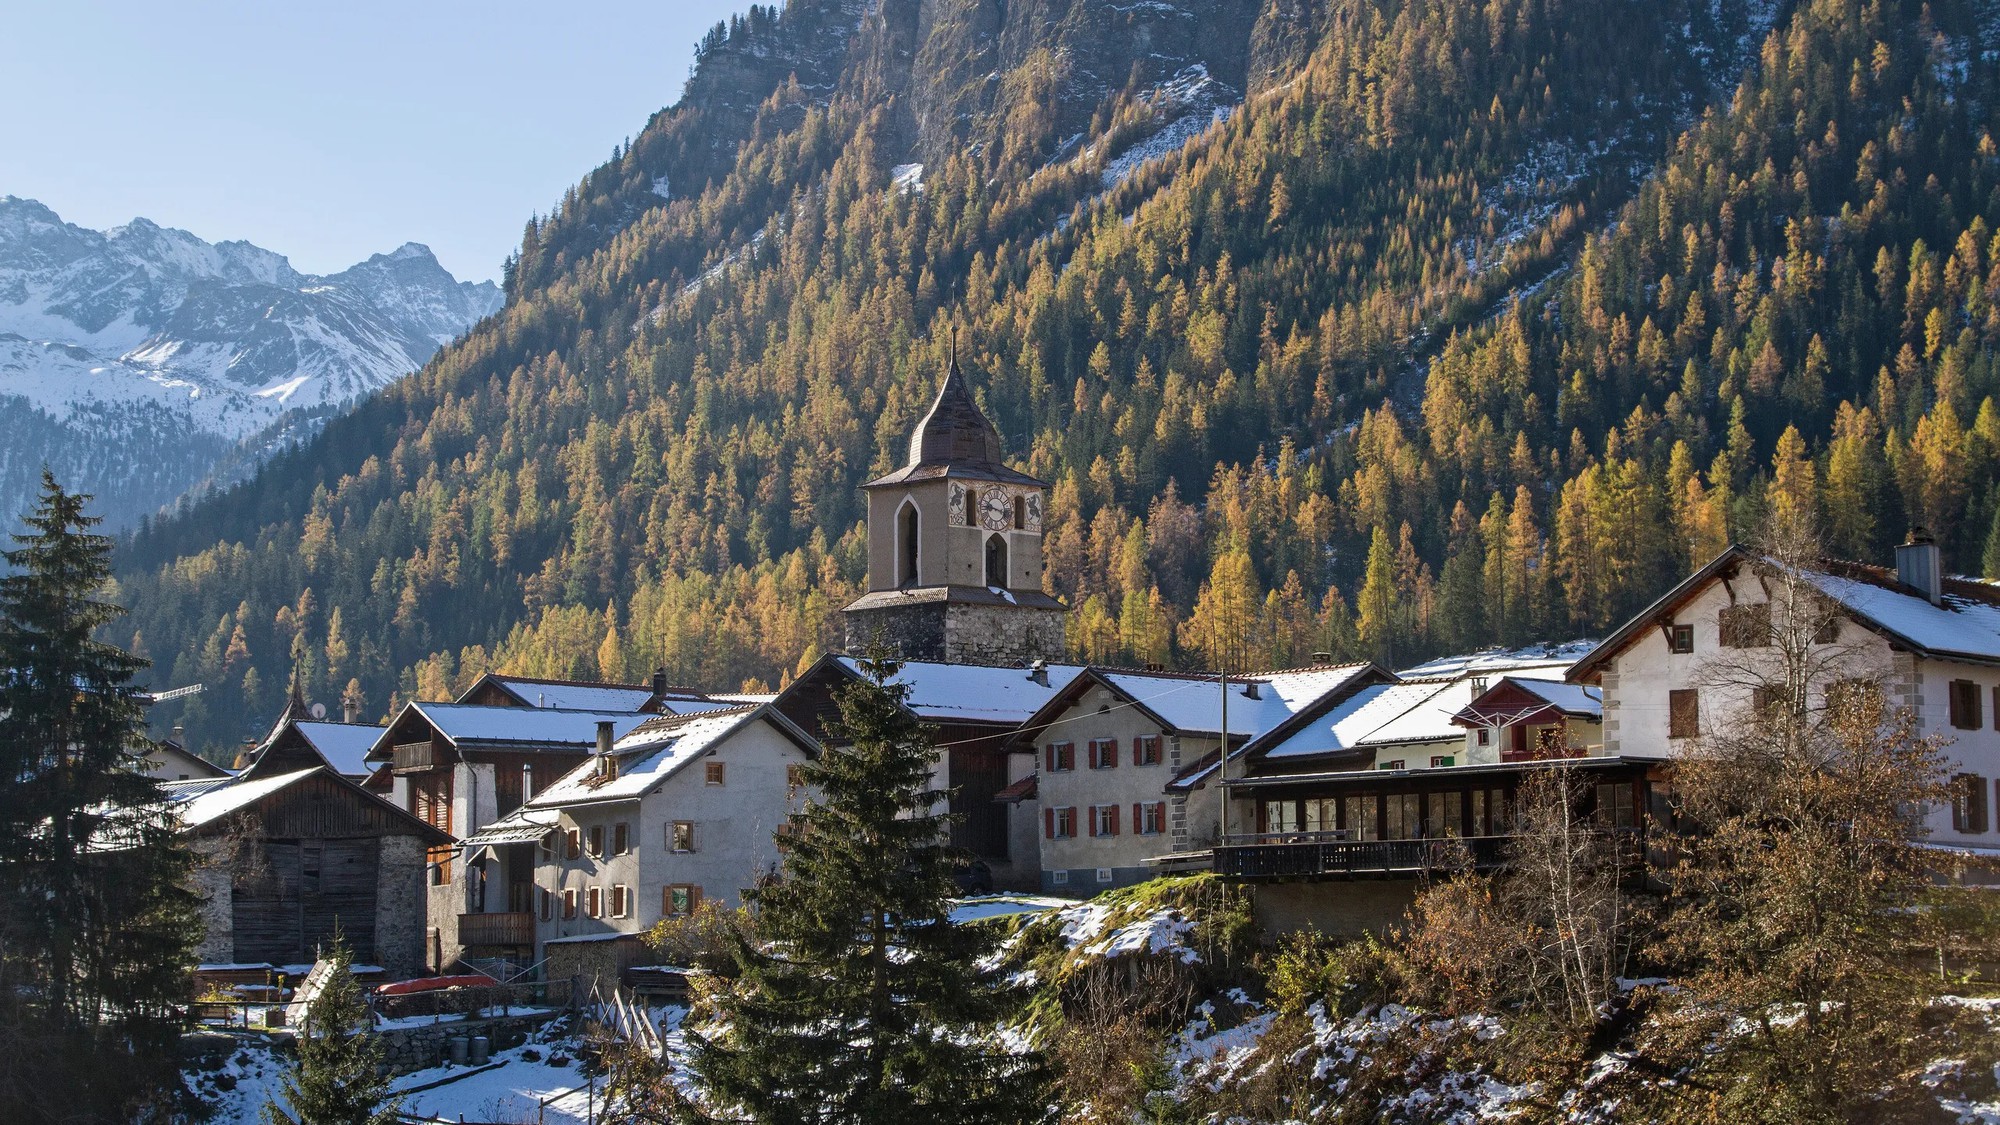 Một ngôi làng ở Thụy Sĩ cấm du khách chụp ảnh vì quá đẹp, ai cũng &quot;kêu trời&quot; khi biết lý do khôn ngoan phía sau - Ảnh 1.